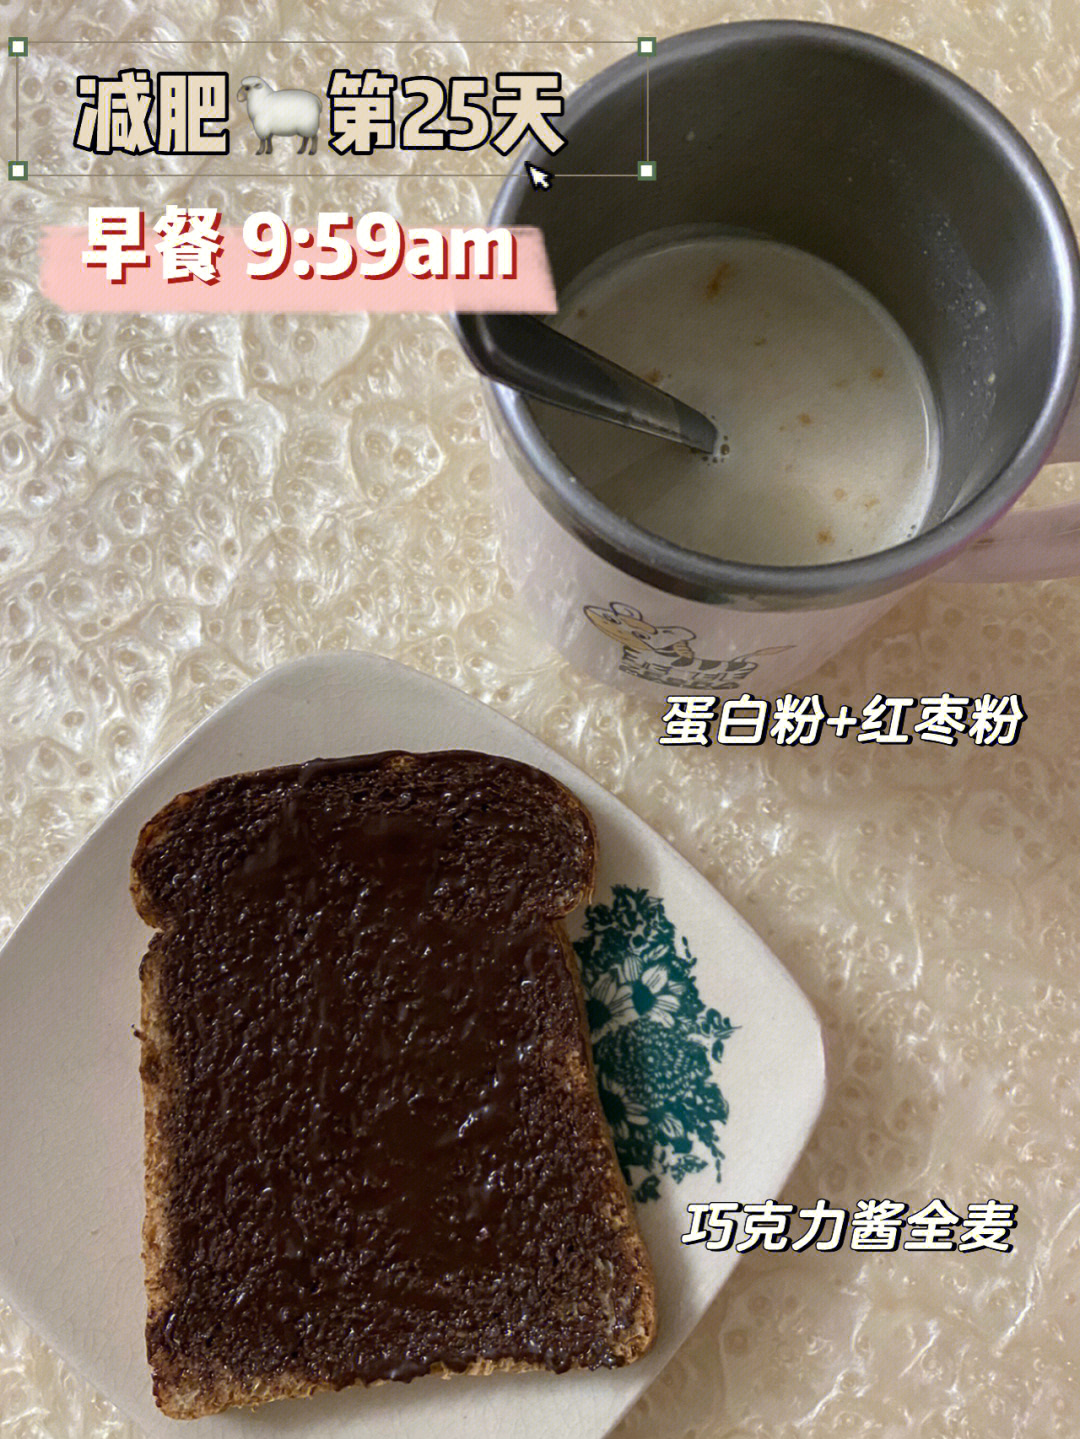 4kg早餐:巧克力全麦 蛋白粉 红枣粉(早餐吃了4片面包果然不可以搭配